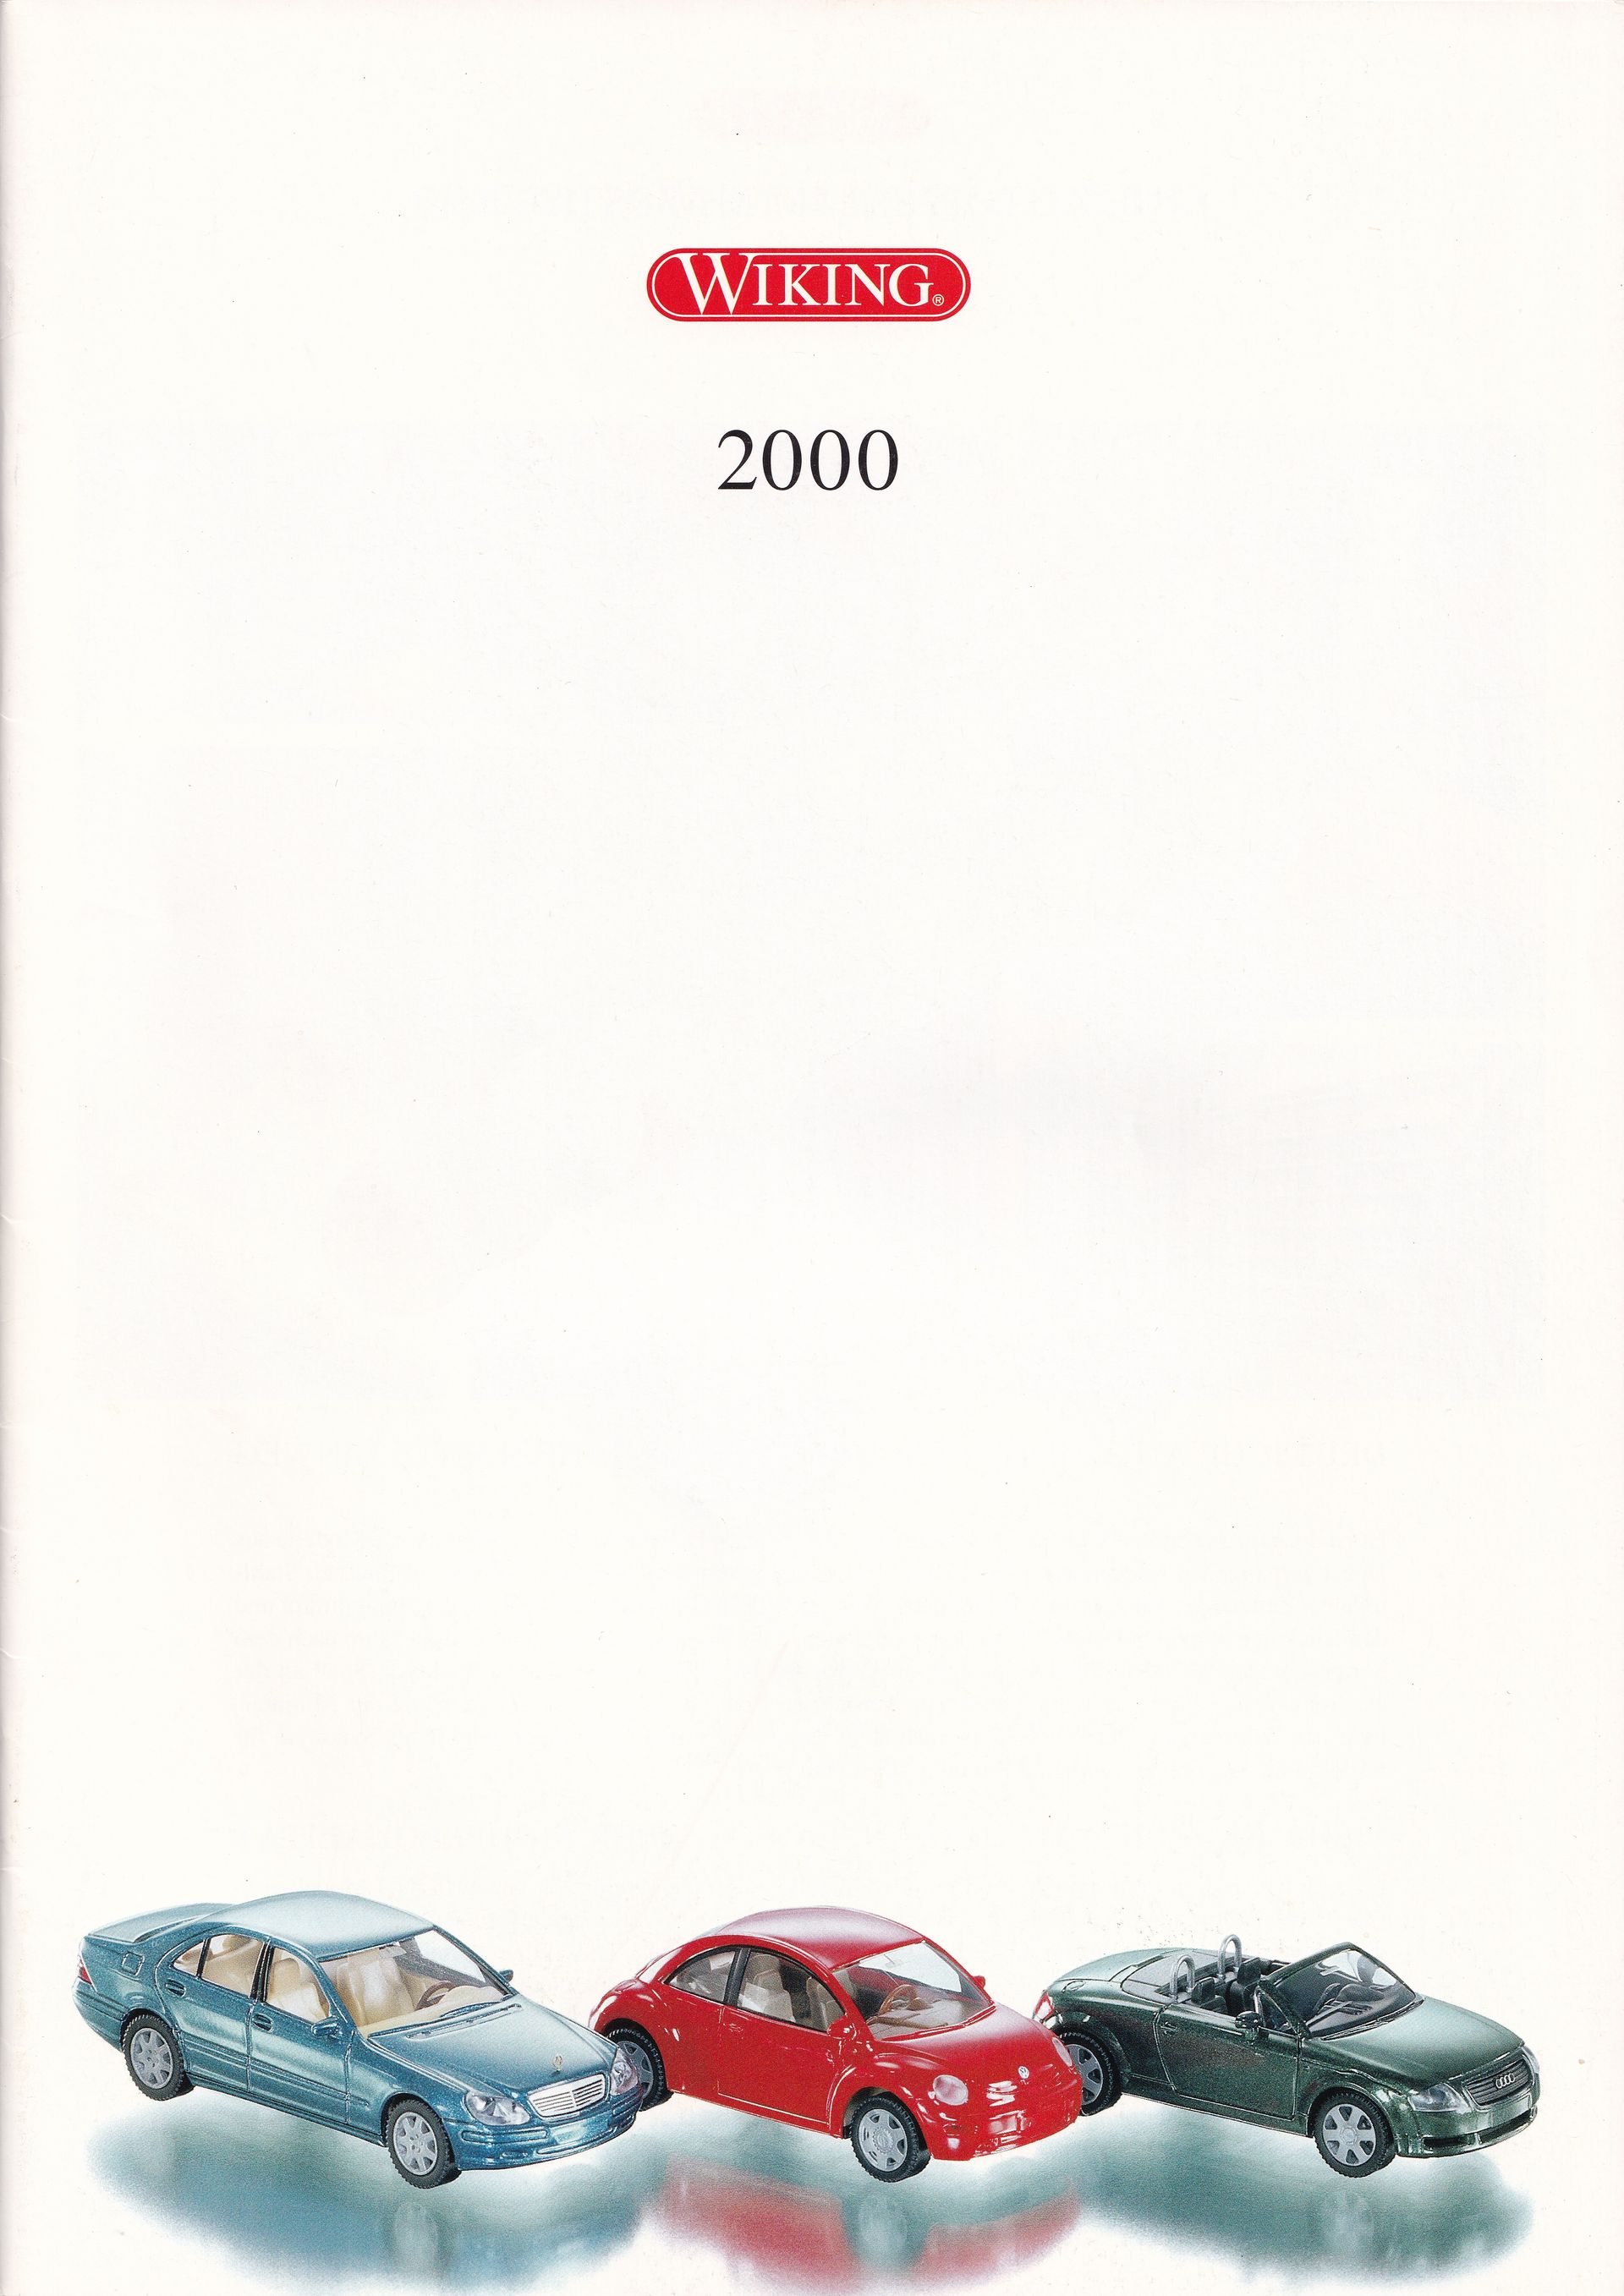 Wiking Catalogue 2000